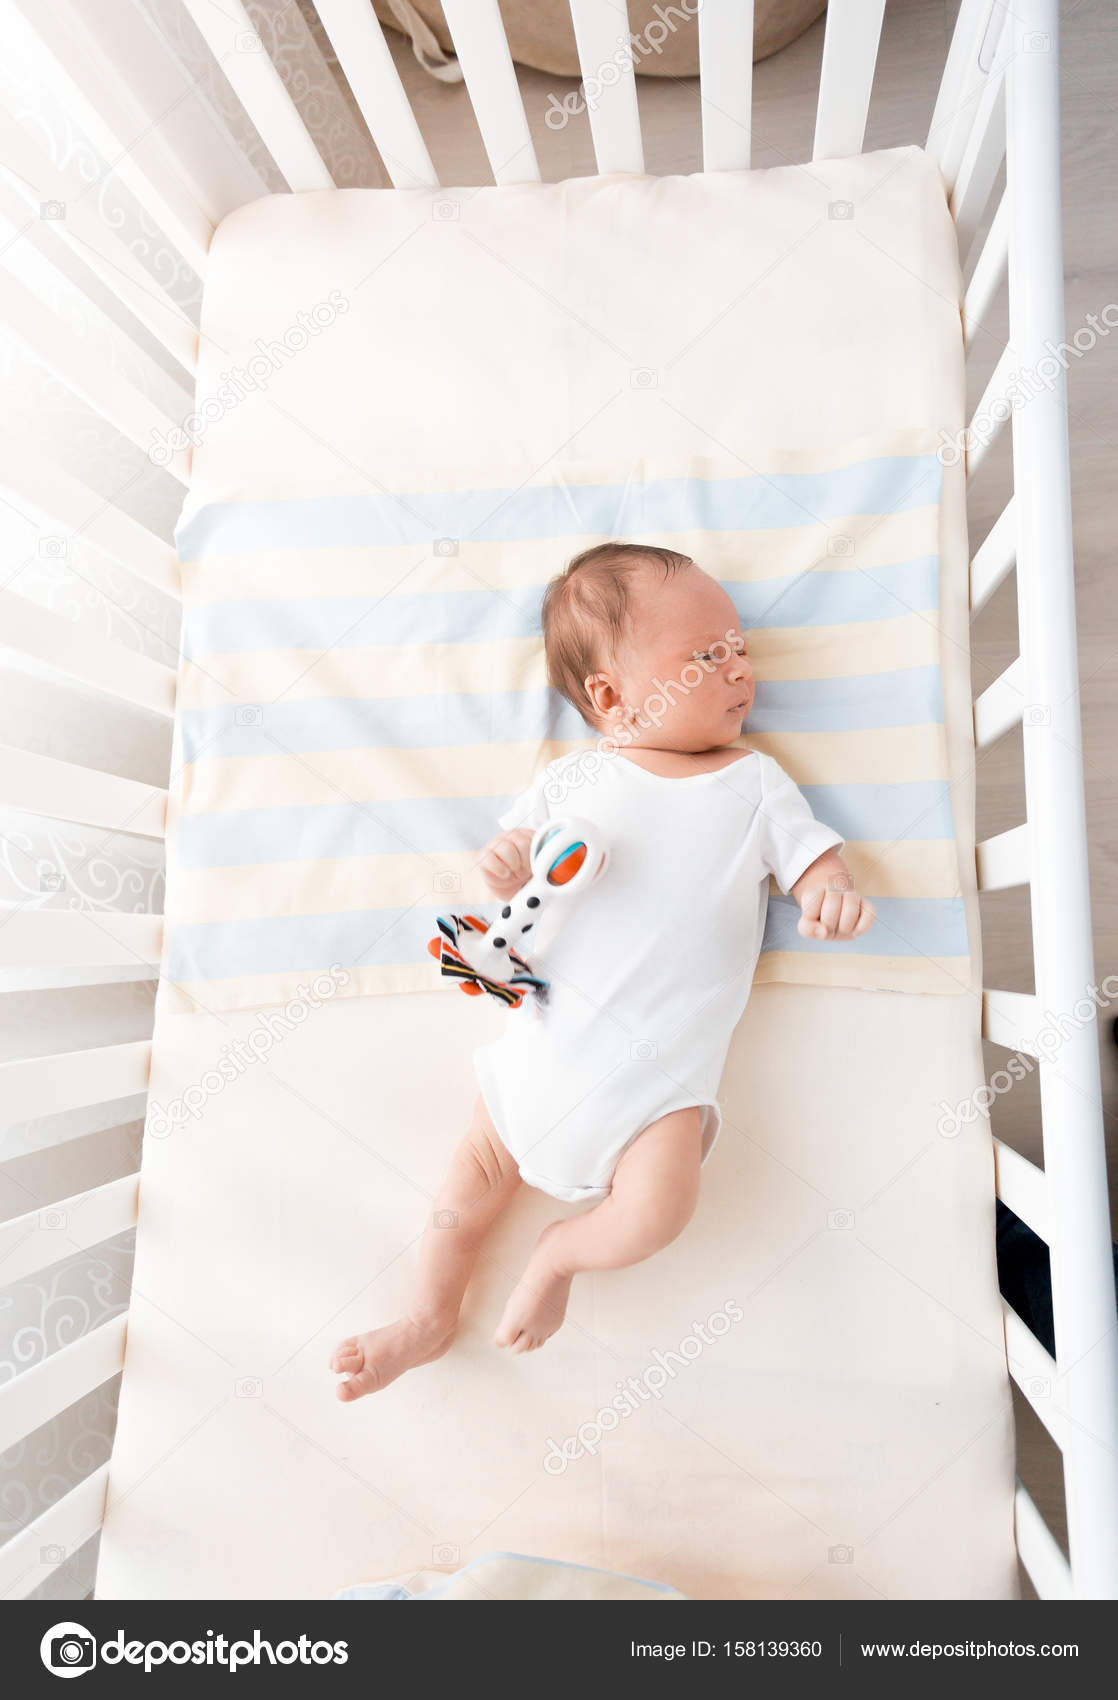 energie Persona Interactie Kleine baby liggend in witte wieg op zonnige dag ⬇ Stockfoto, rechtenvrije  foto door © Kryzhov #158139360